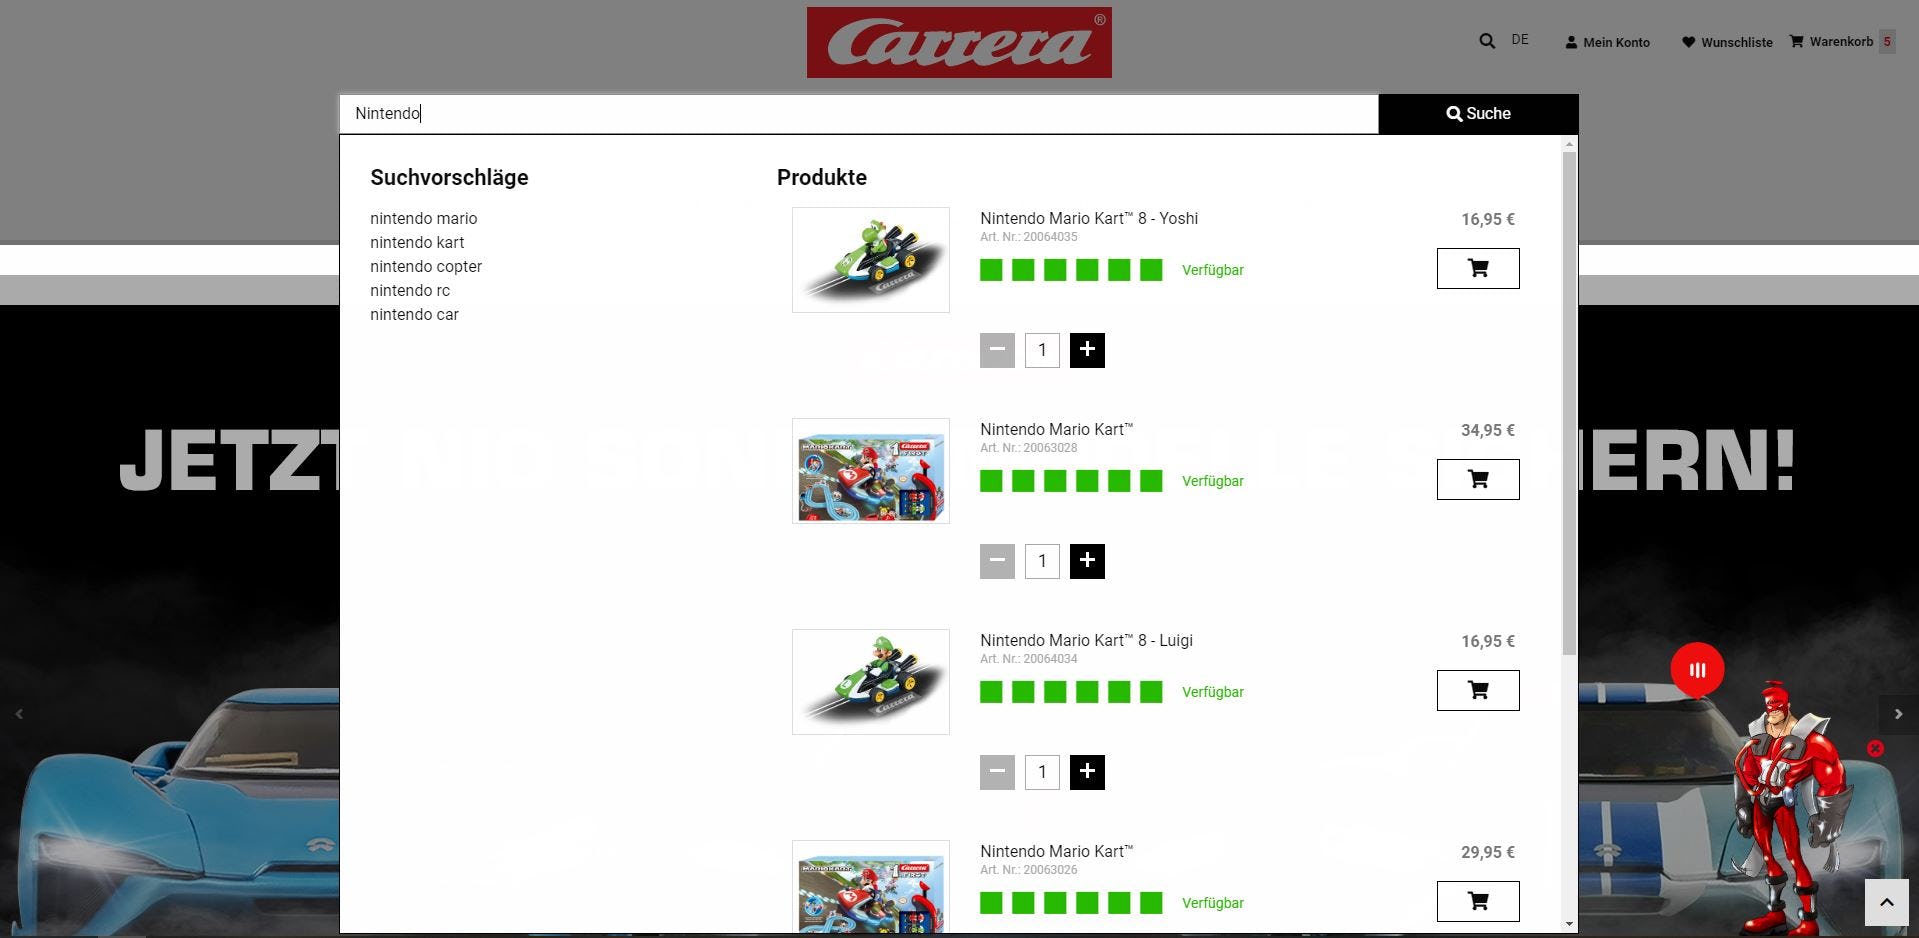 carrera-toys.com: Screenshot